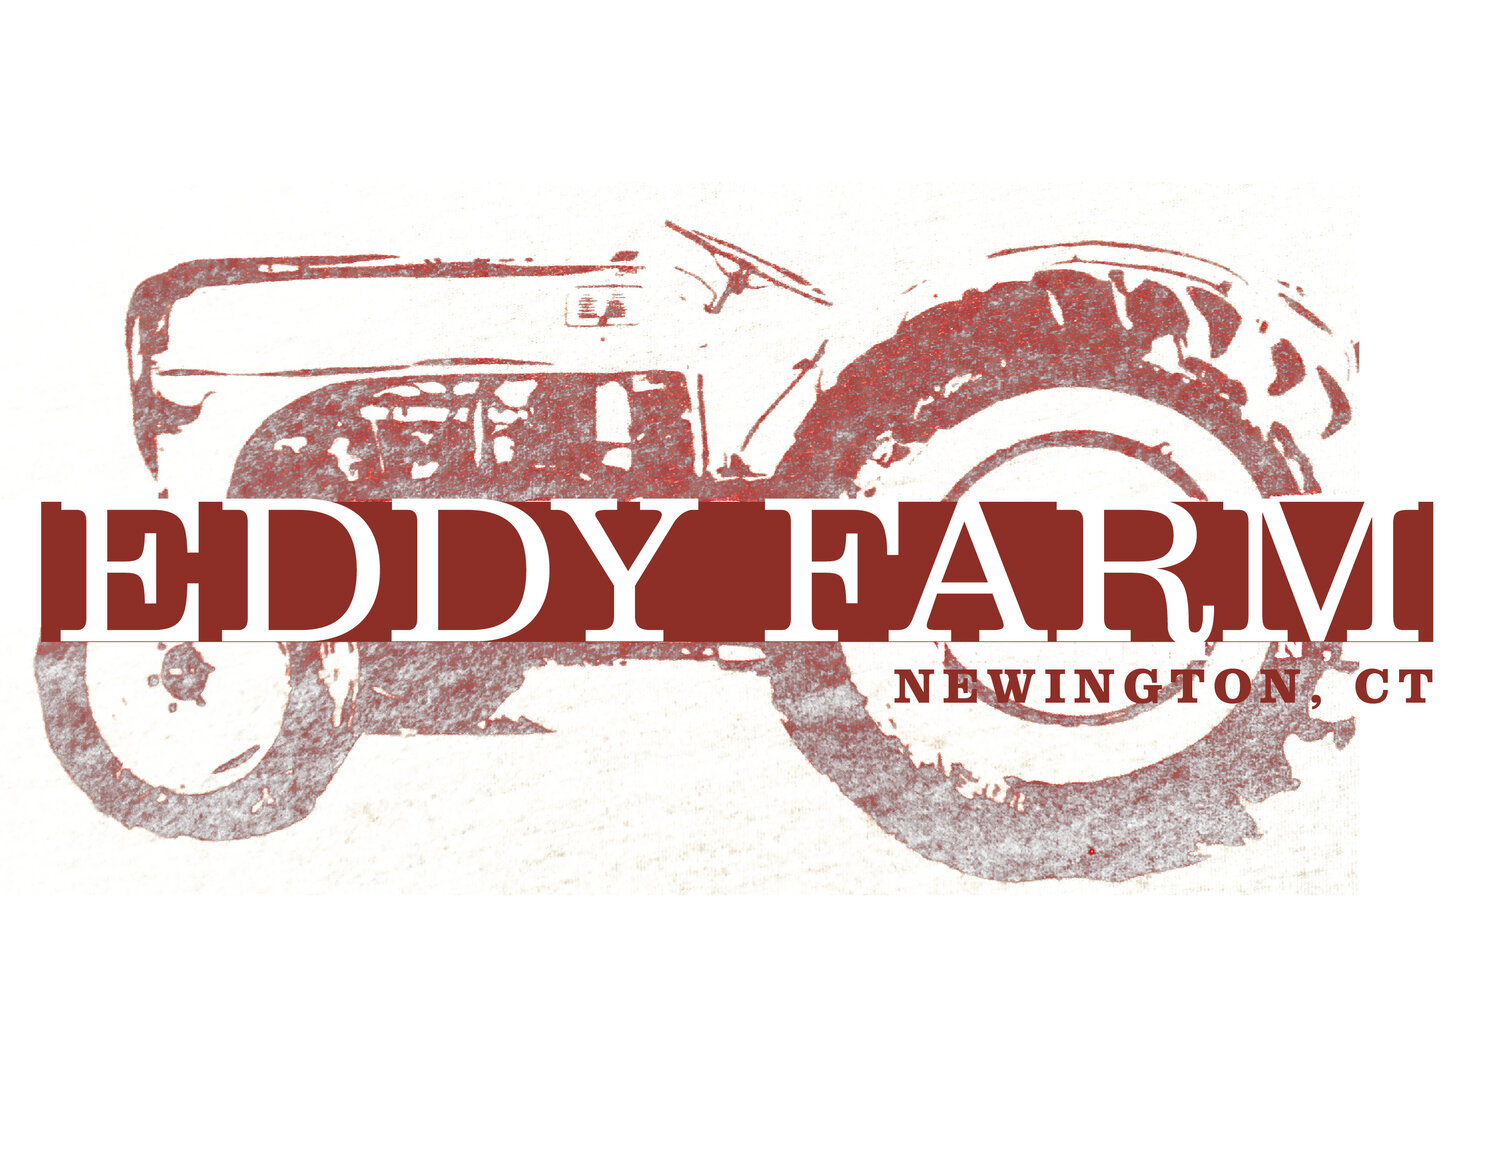 Eddy Farm